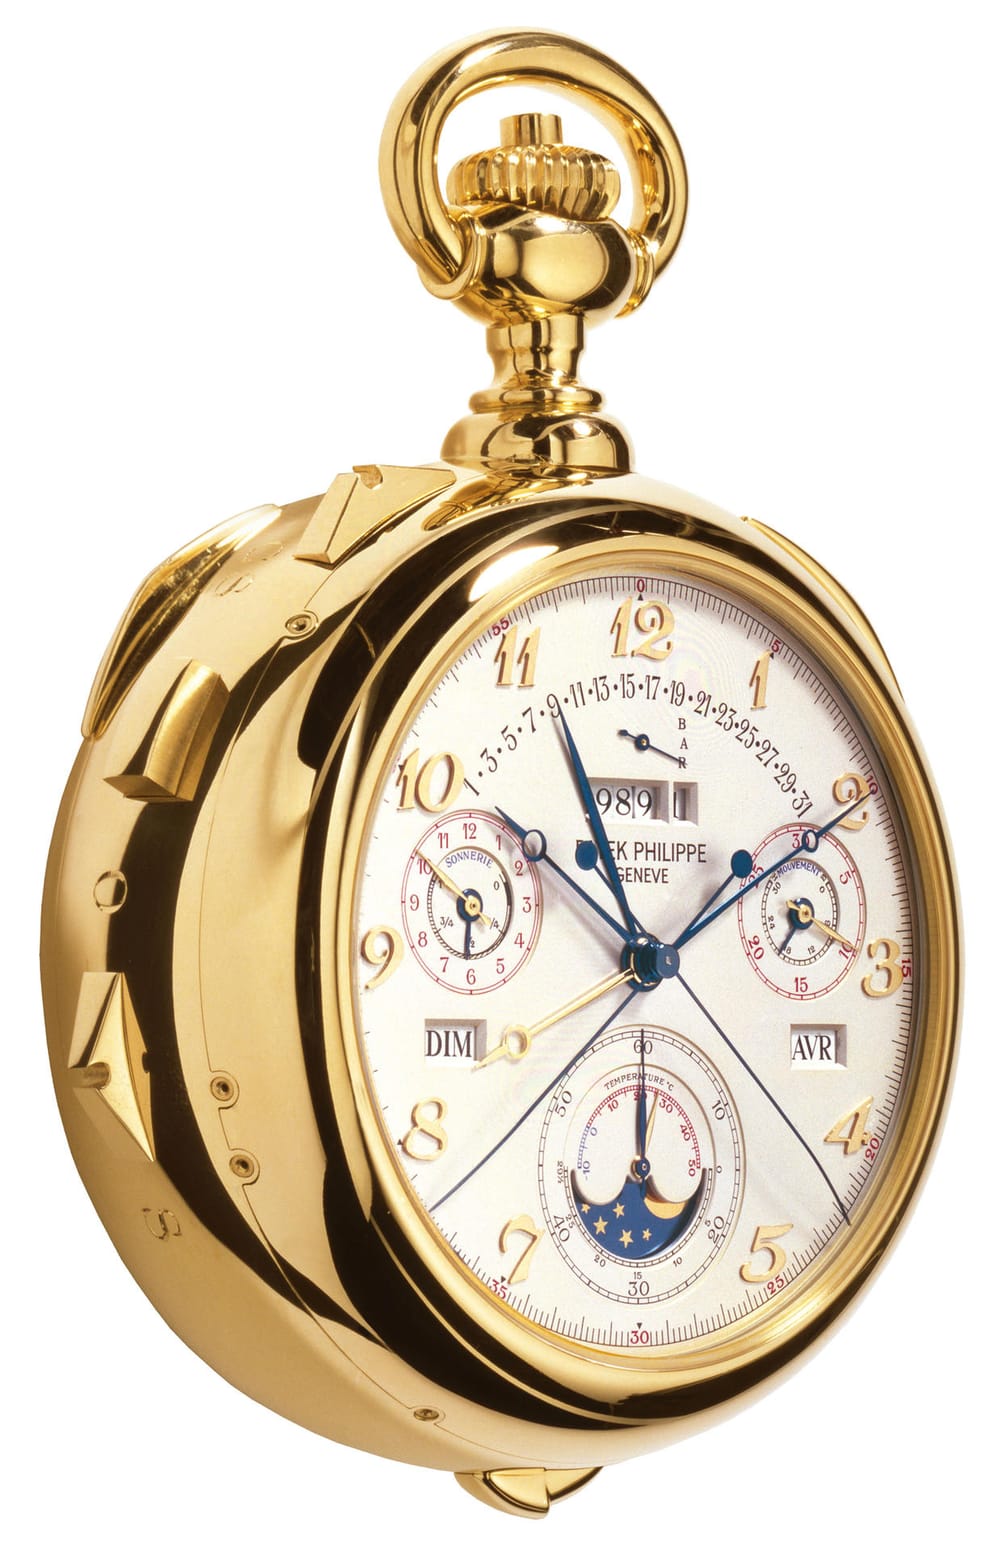 Zu den wertvollsten Uhren zählen vor allem Taschenuhren. Aus Anlass des 150. Firmenjubiläums baute Patek Philippe mit der Patek Philippe Calibre 89 eine der kompliziertesten Uhren der Welt. 33 Komplikationen machen die Uhr zu einem Meisterwerk, das einem Sammler Ende 2009 rund fünf Millionen US-Dollar (3,4 Millionen Euro) wert war.